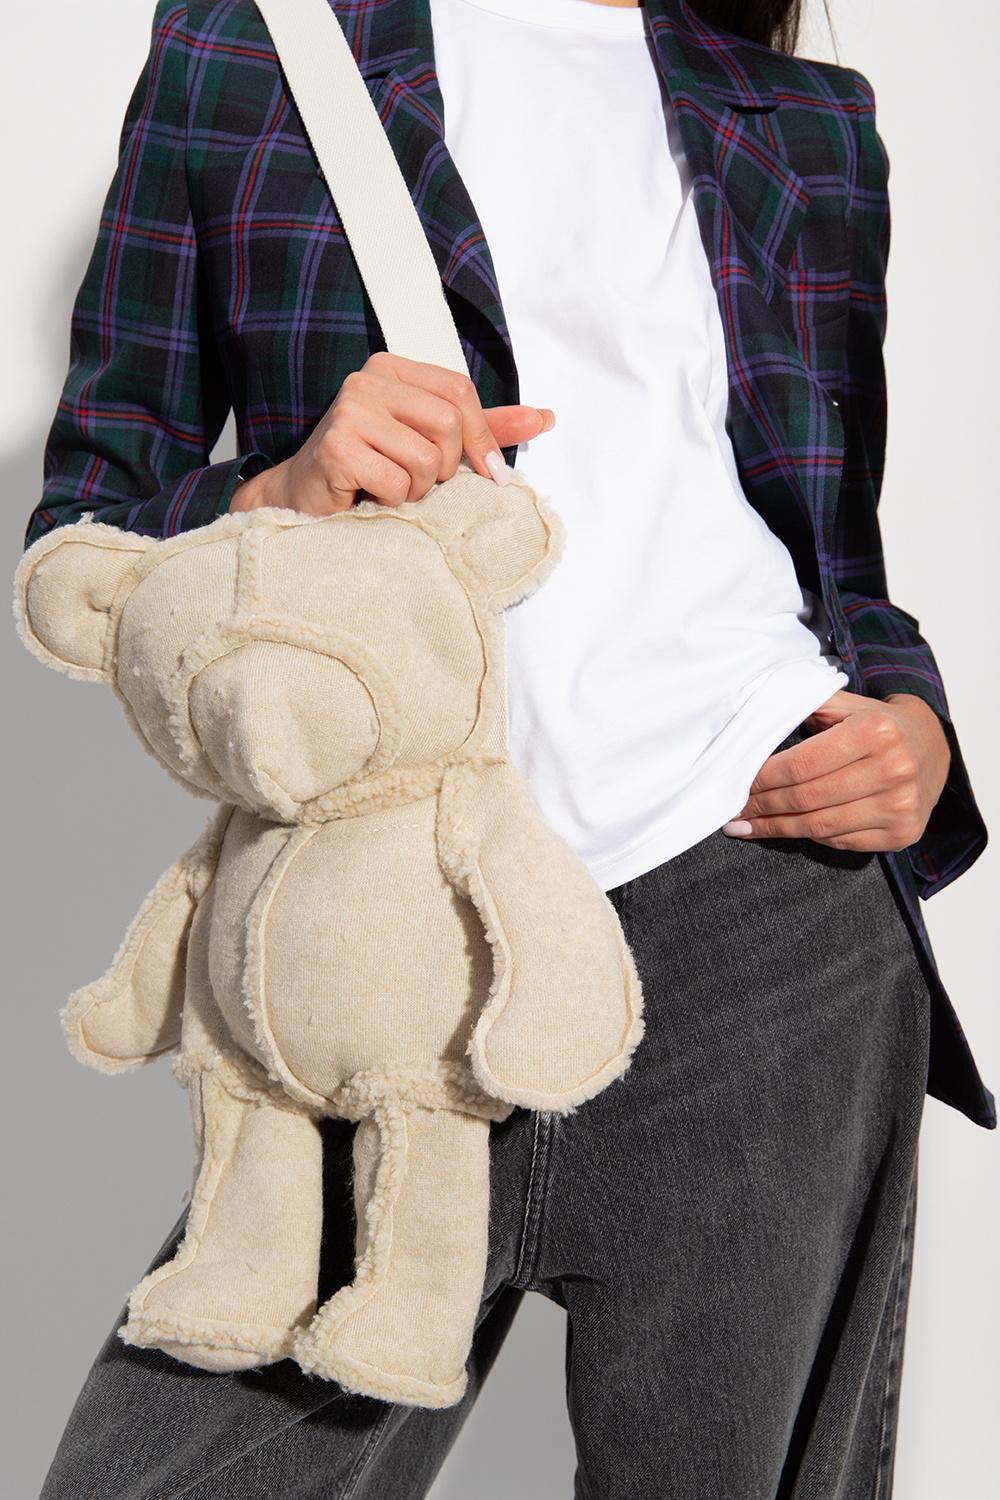 Steiff Teddy Bear Purse Blonde Button in Ear Made in Germany | eBay